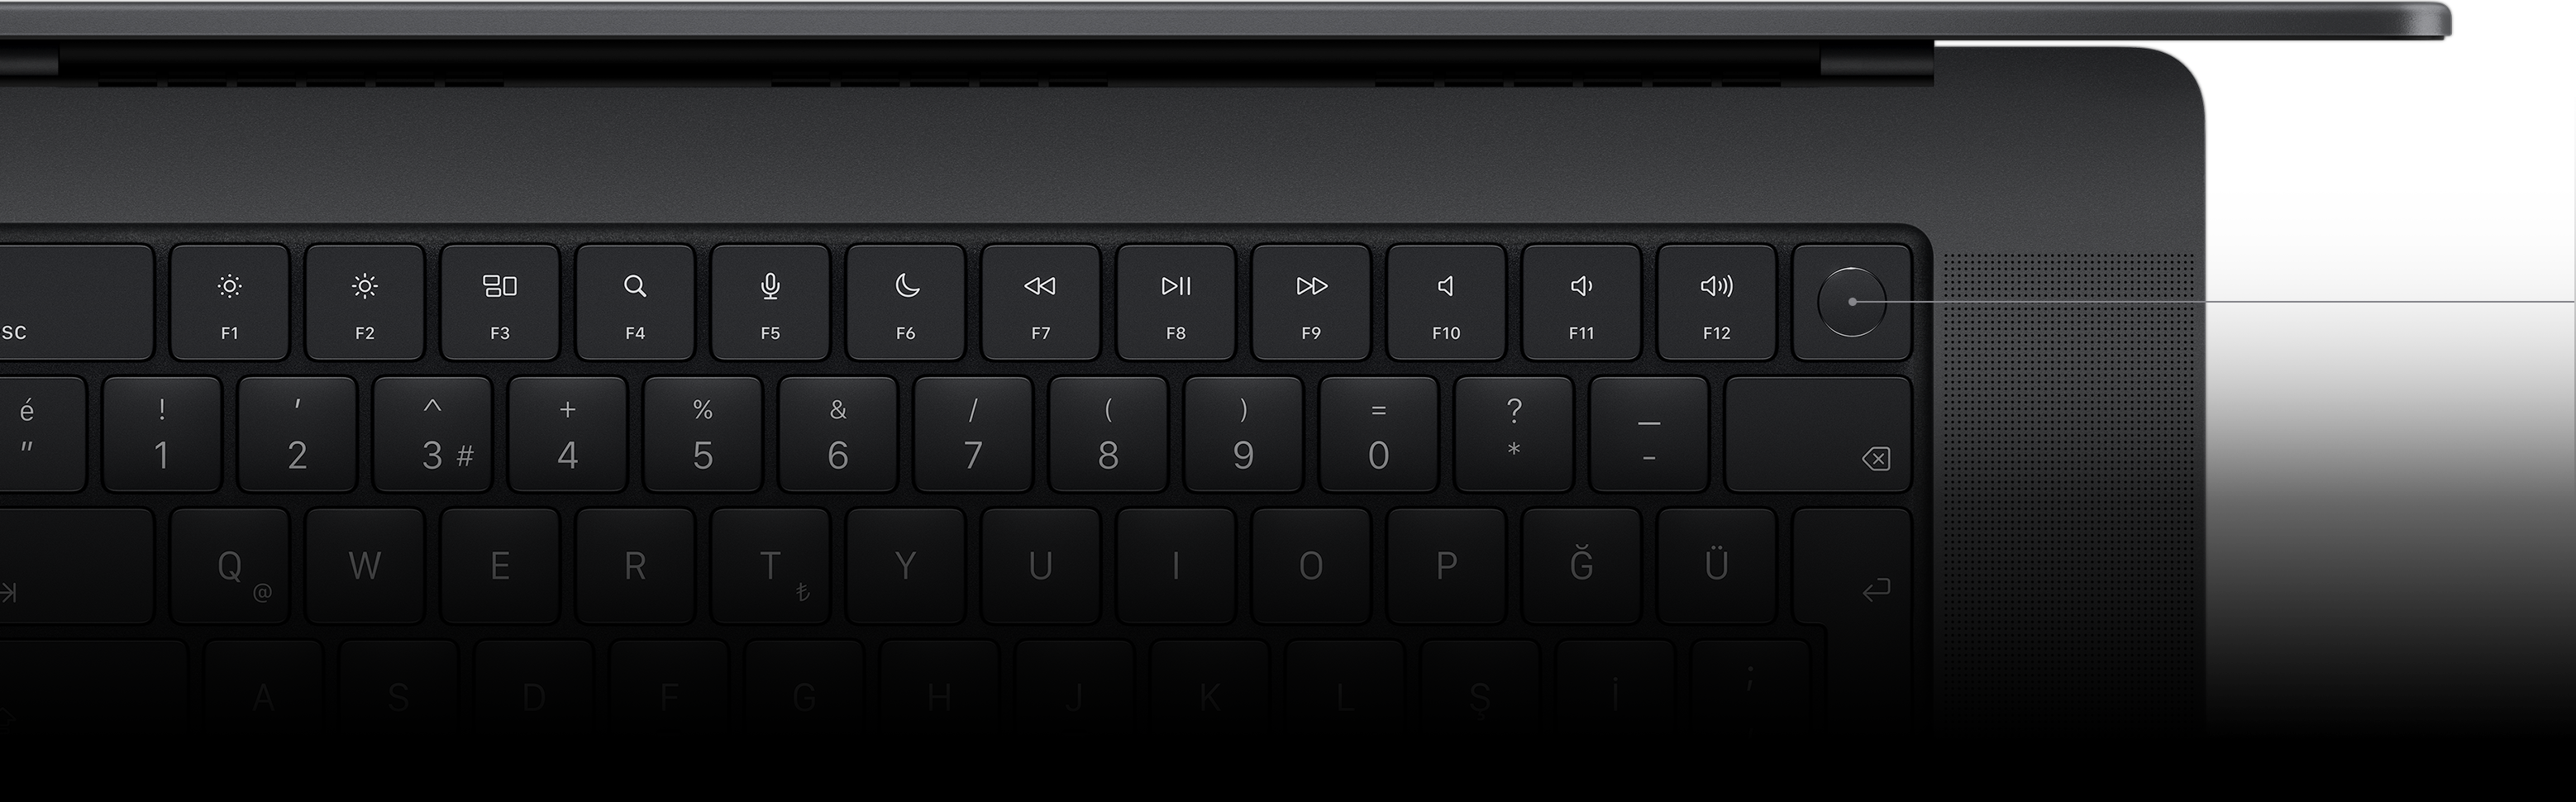 Magic Keyboard üzerindeki Touch ID tuşunu gösteren imleç